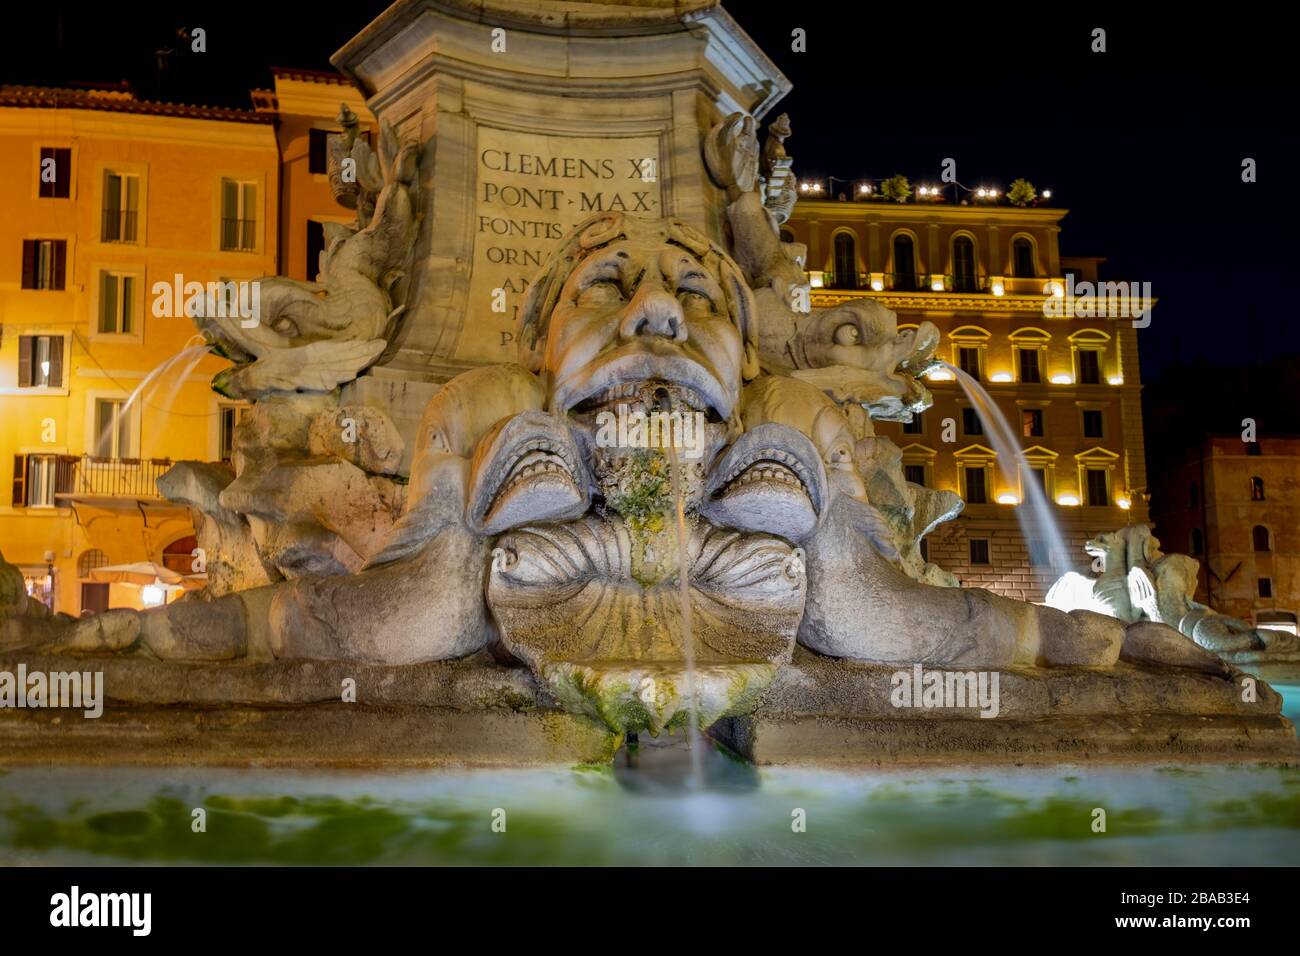 Fotografia notturna in Piazza del Pantheon. Particolare della fontana di Piazza della rotonda a Roma Foto Stock